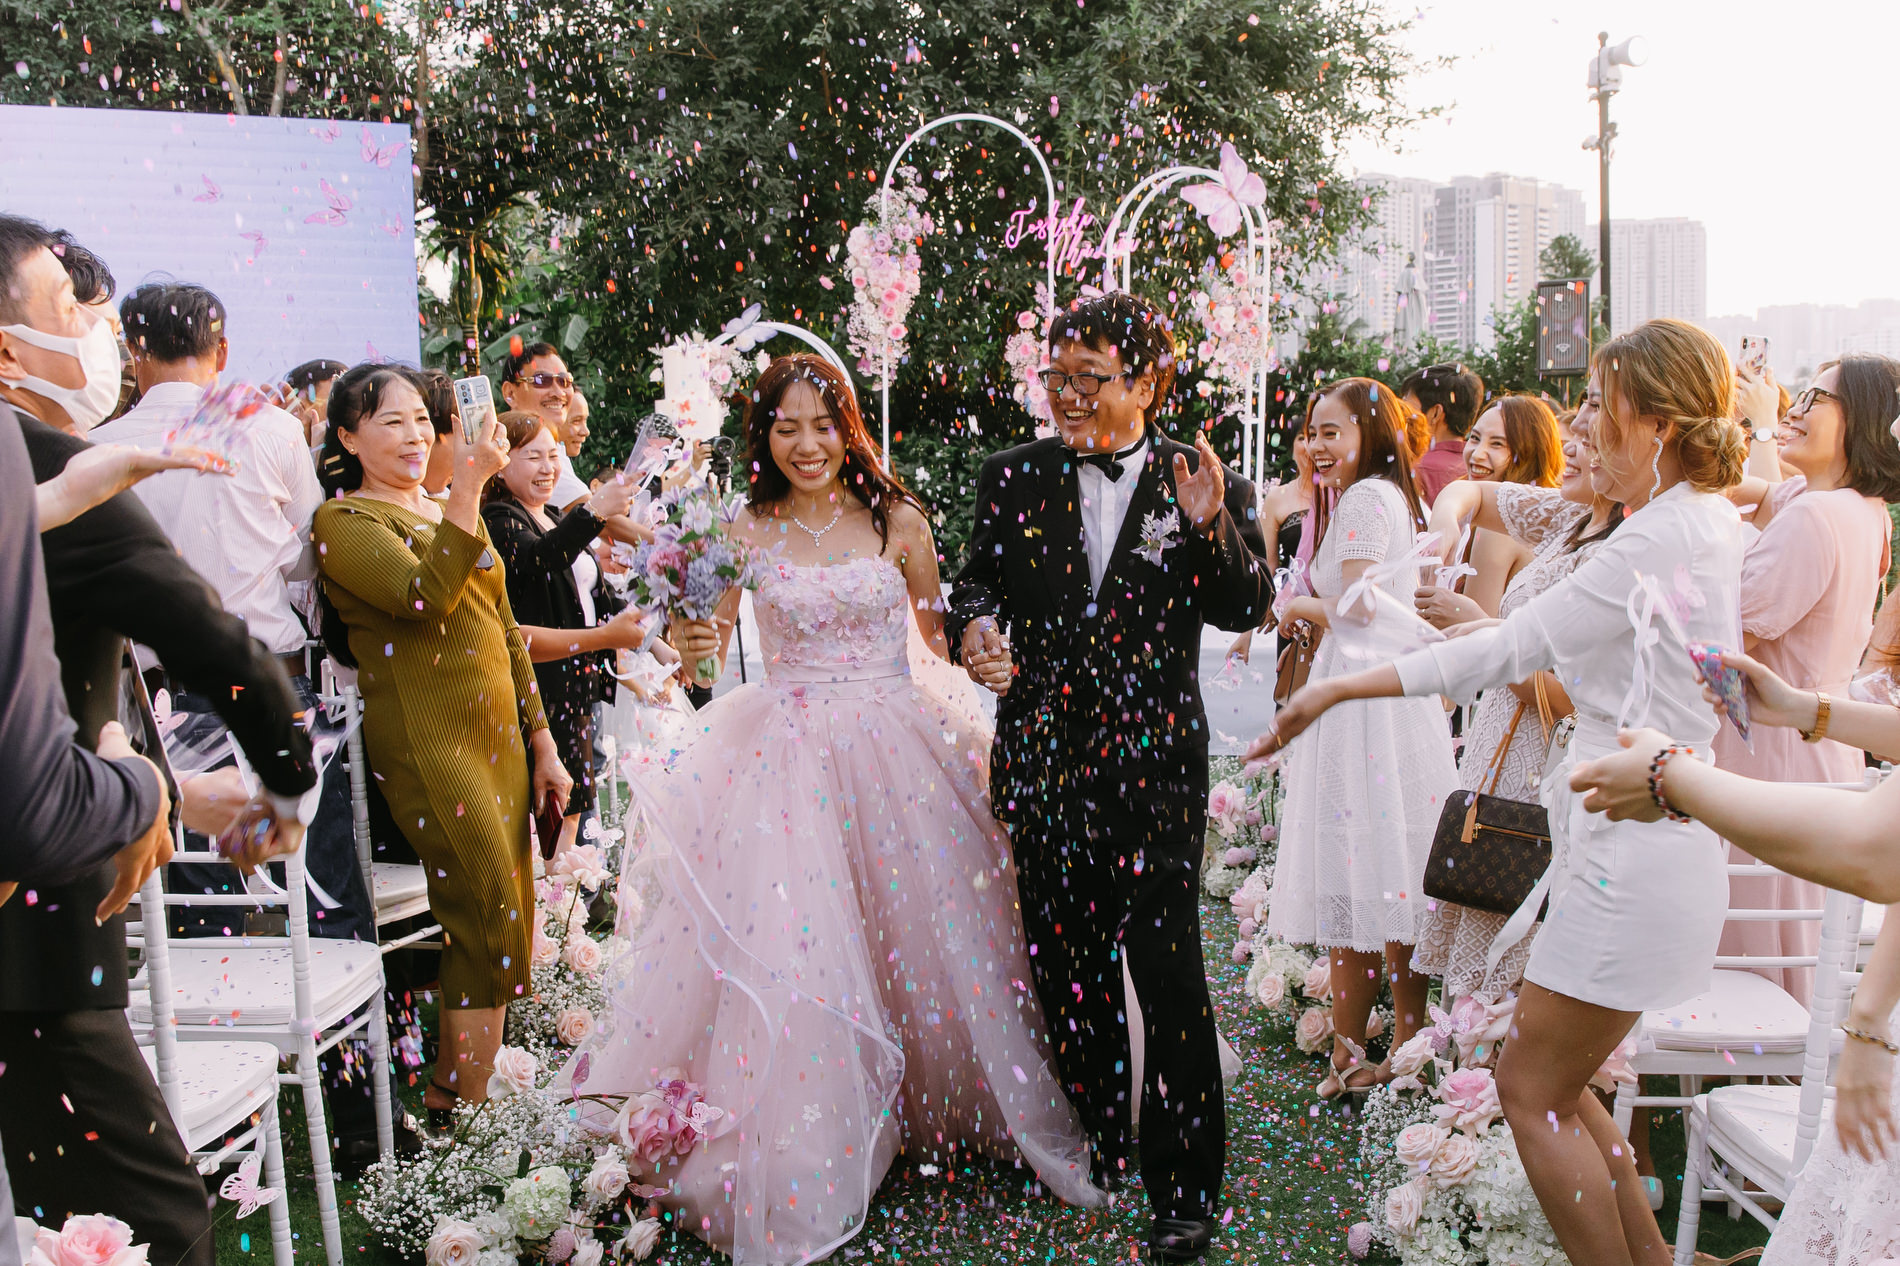 Liễu + Toshiki's Wedding Ceremony | Tổ chức tiệc cưới ấm cúng bên bờ sông cùng Mia Sài Gòn (2)